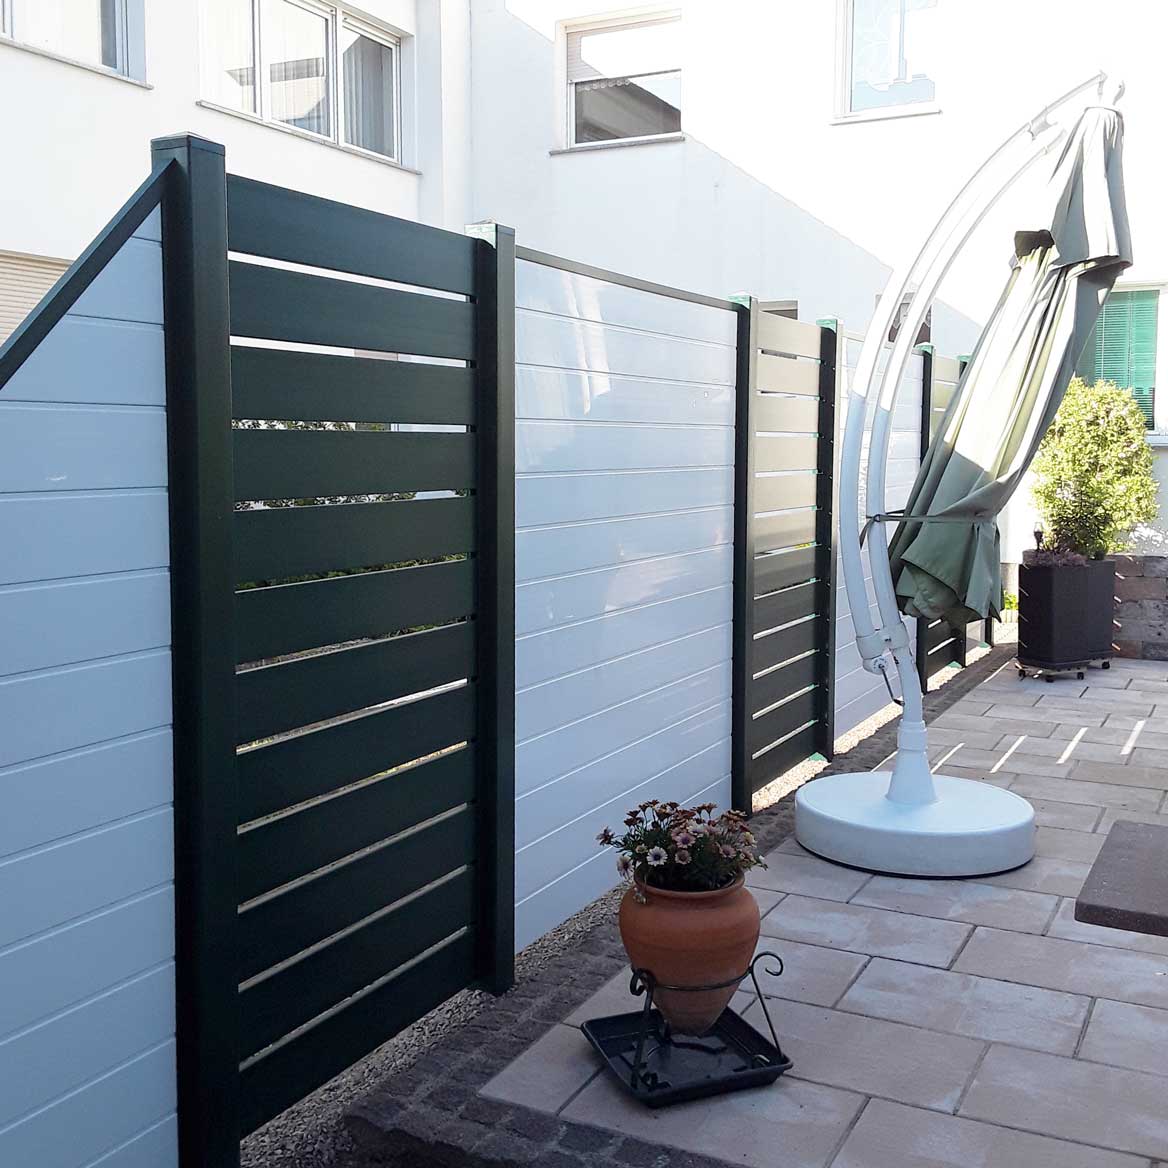 Sichtschutzzaun aus Kunststoff PVC in Anthrazit und Weiß auf einer Terrasse